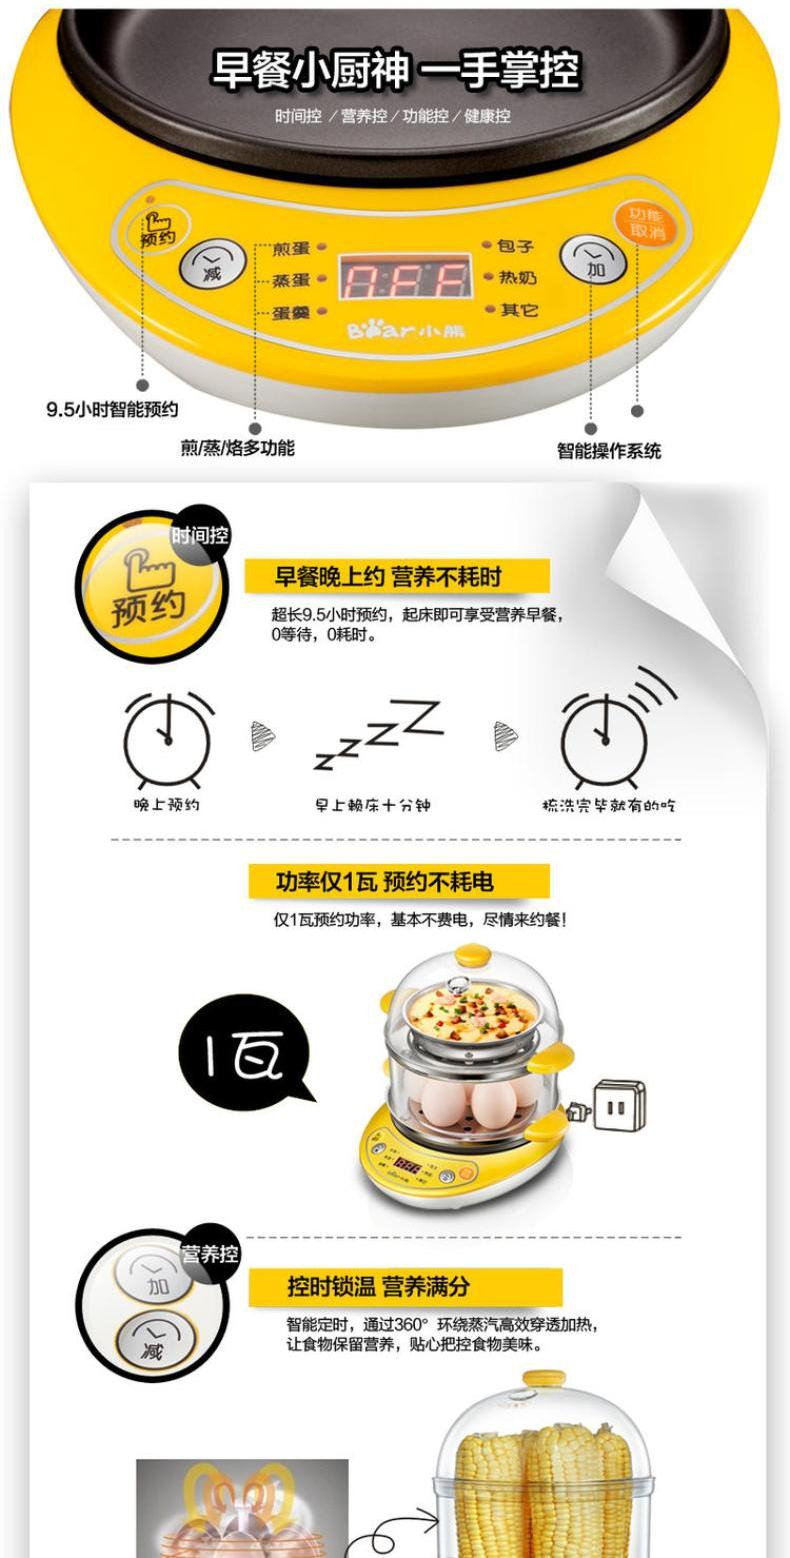 【东营馆】小熊ZDQ-A14T1家用煮蛋器双层煎蛋器多功能蒸蛋器全自动早餐机（部分包邮）